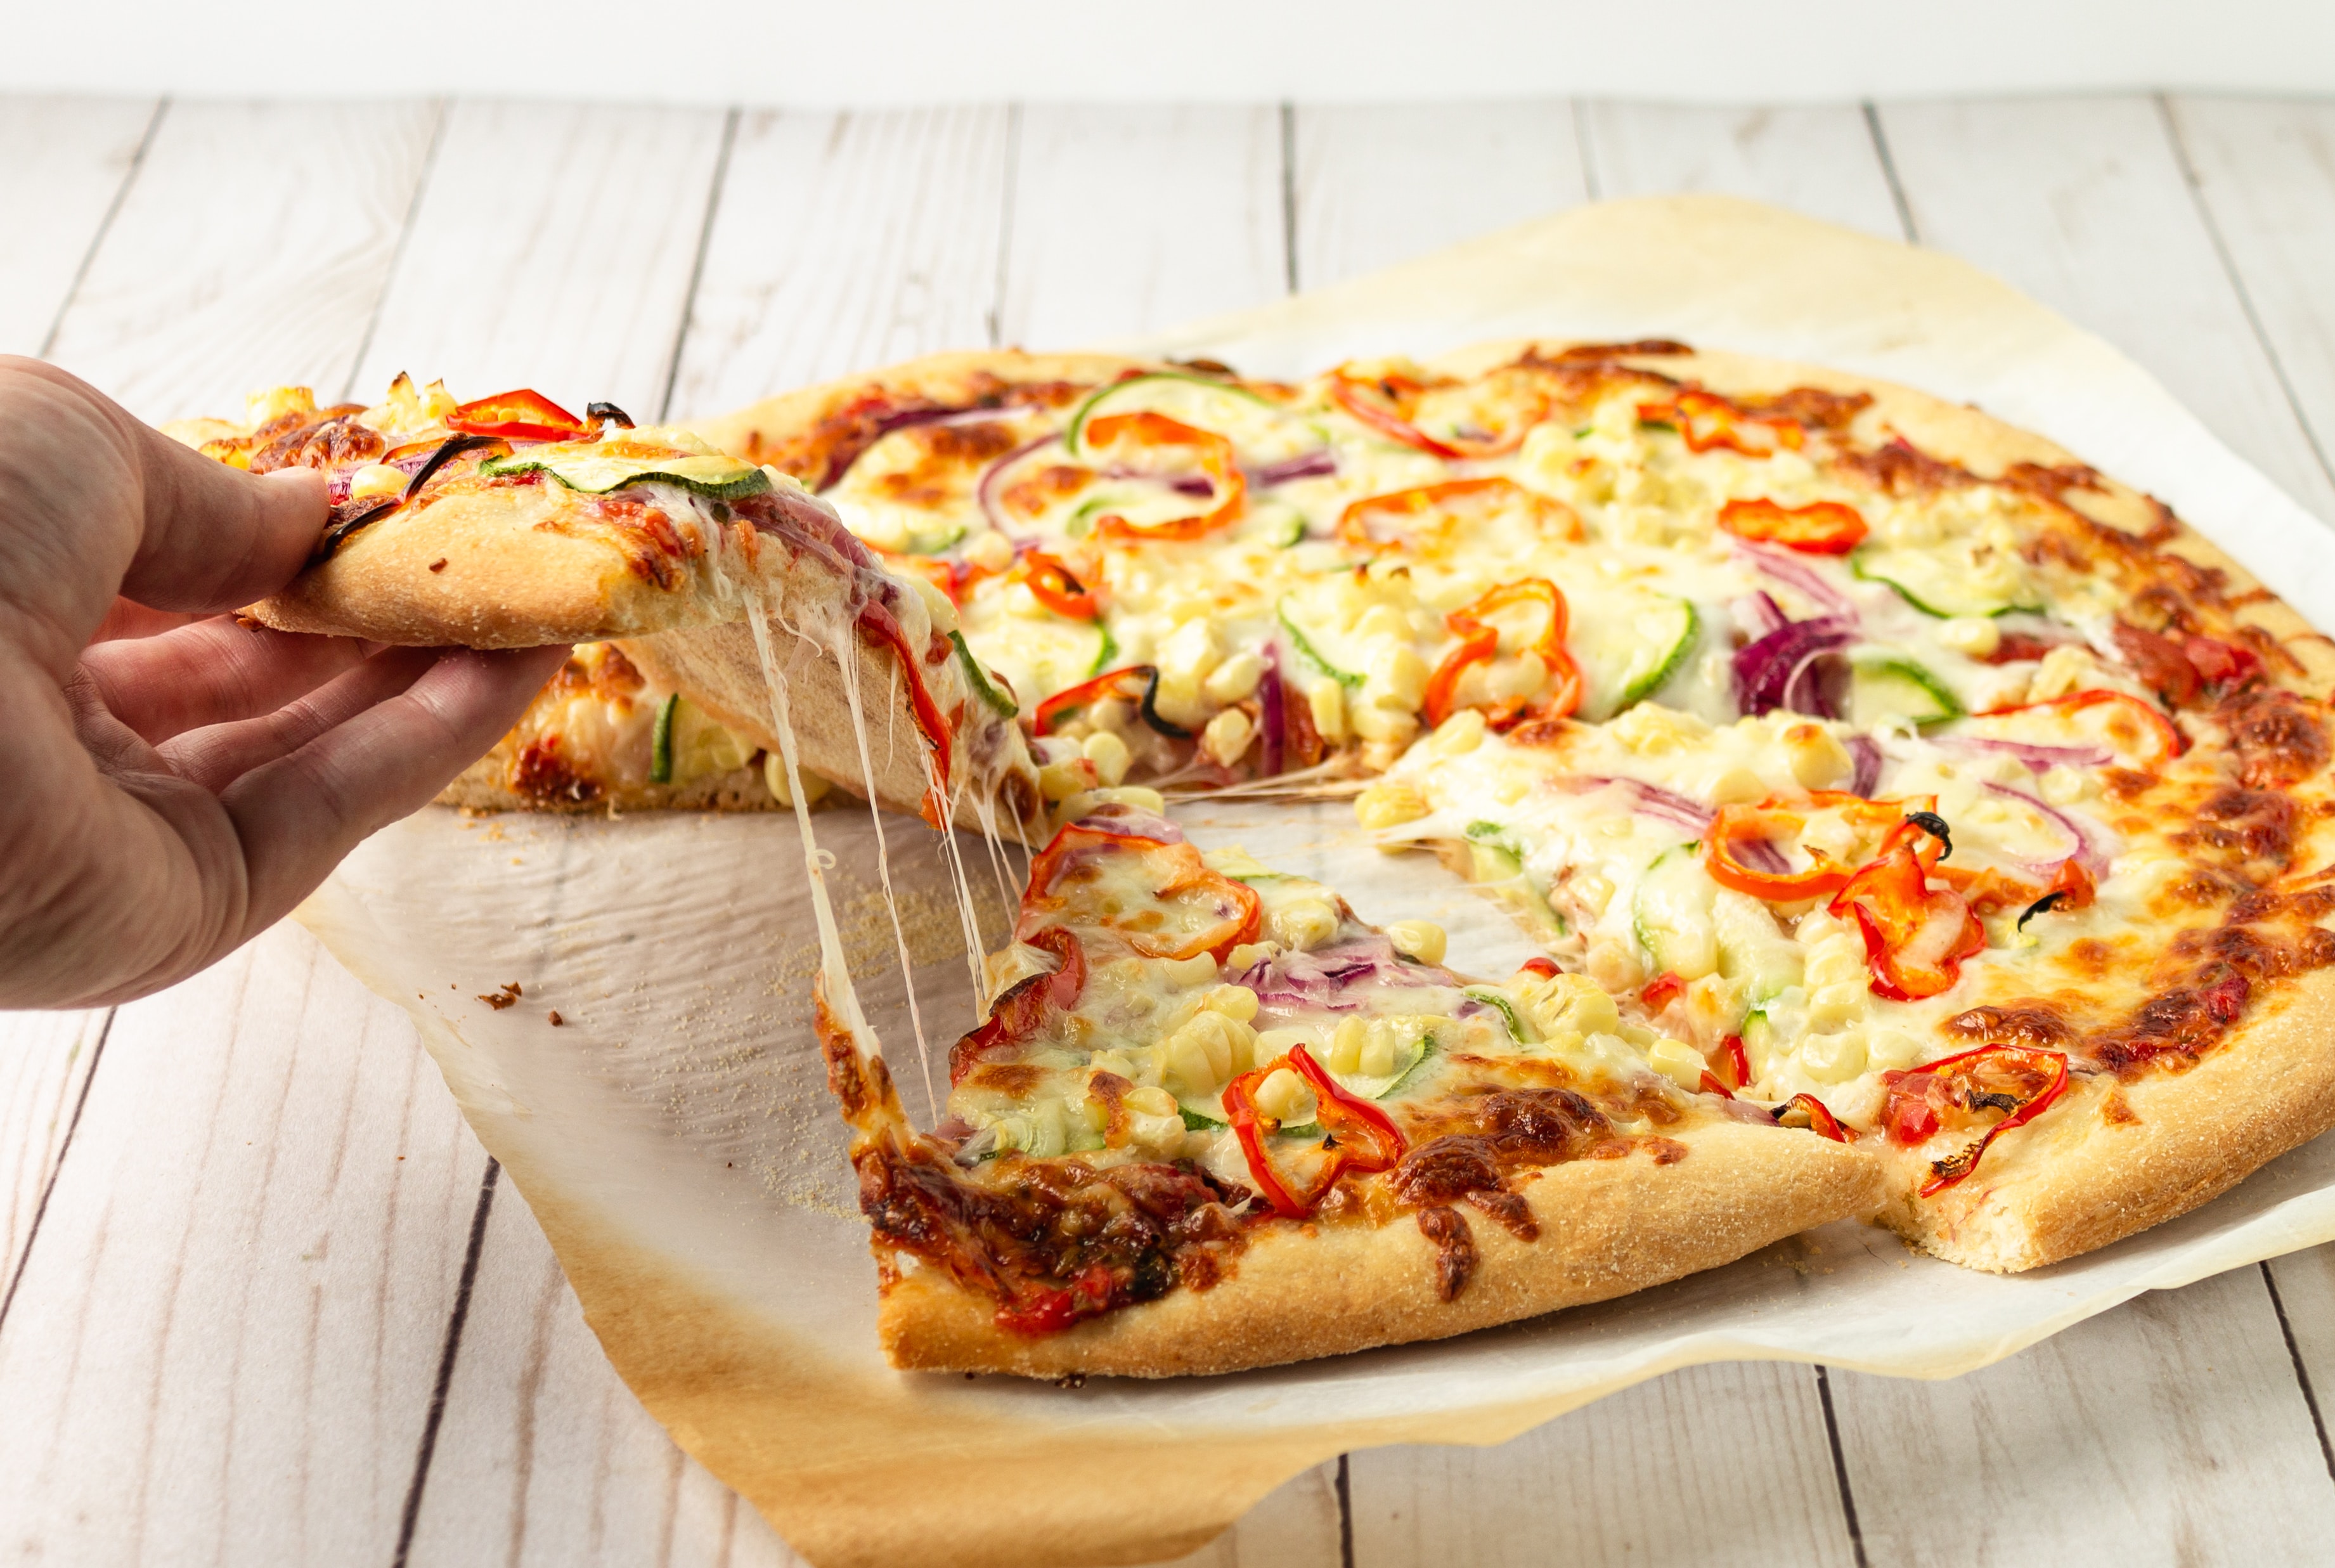 Απλά κόλπα που θα κάνουν την σπιτική πίτσα να έχει την πιο αφράτη ζύμη